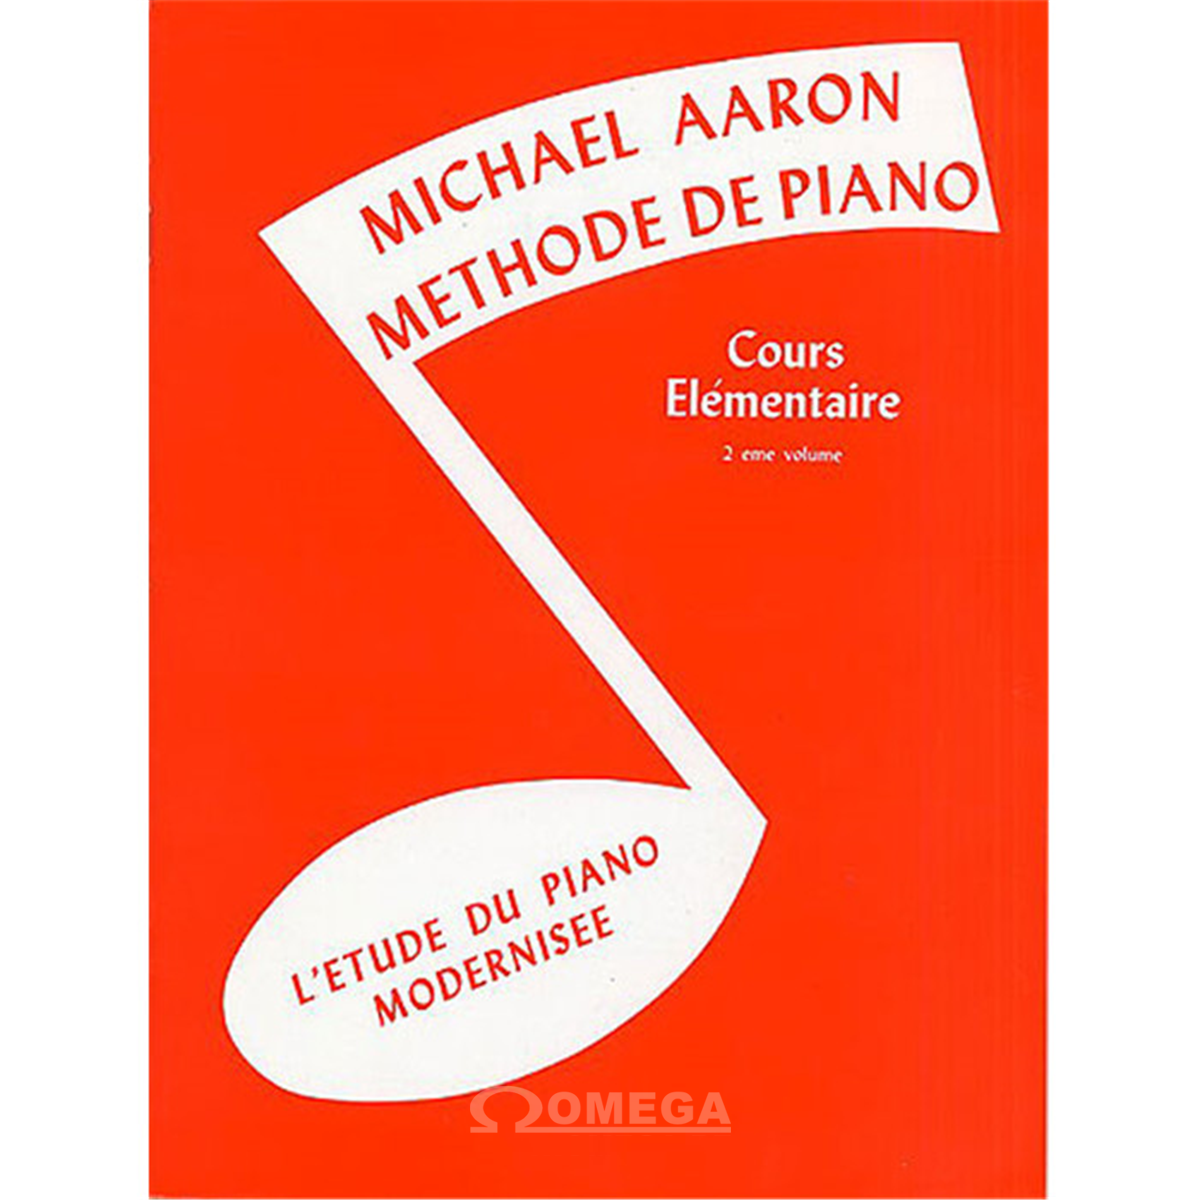 AARON Michel Méthode de Piano Cours Elémentaire Vol.2